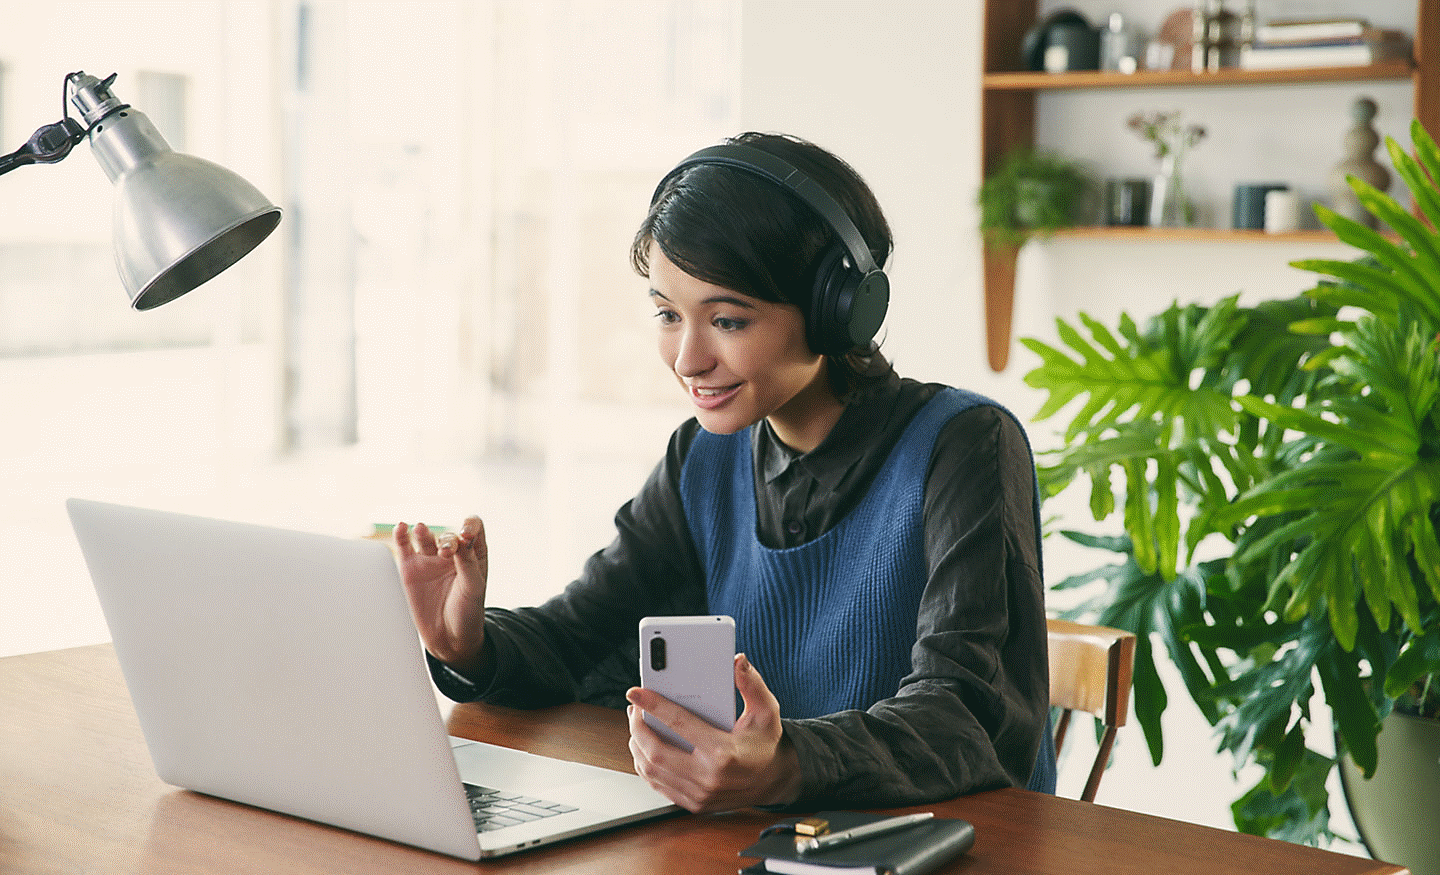 책상에 앉아 블랙 색상의 소니 WH-CH720 헤드폰을 착용하고 노트북과 스마트폰을 사용하고 있는 여성의 이미지